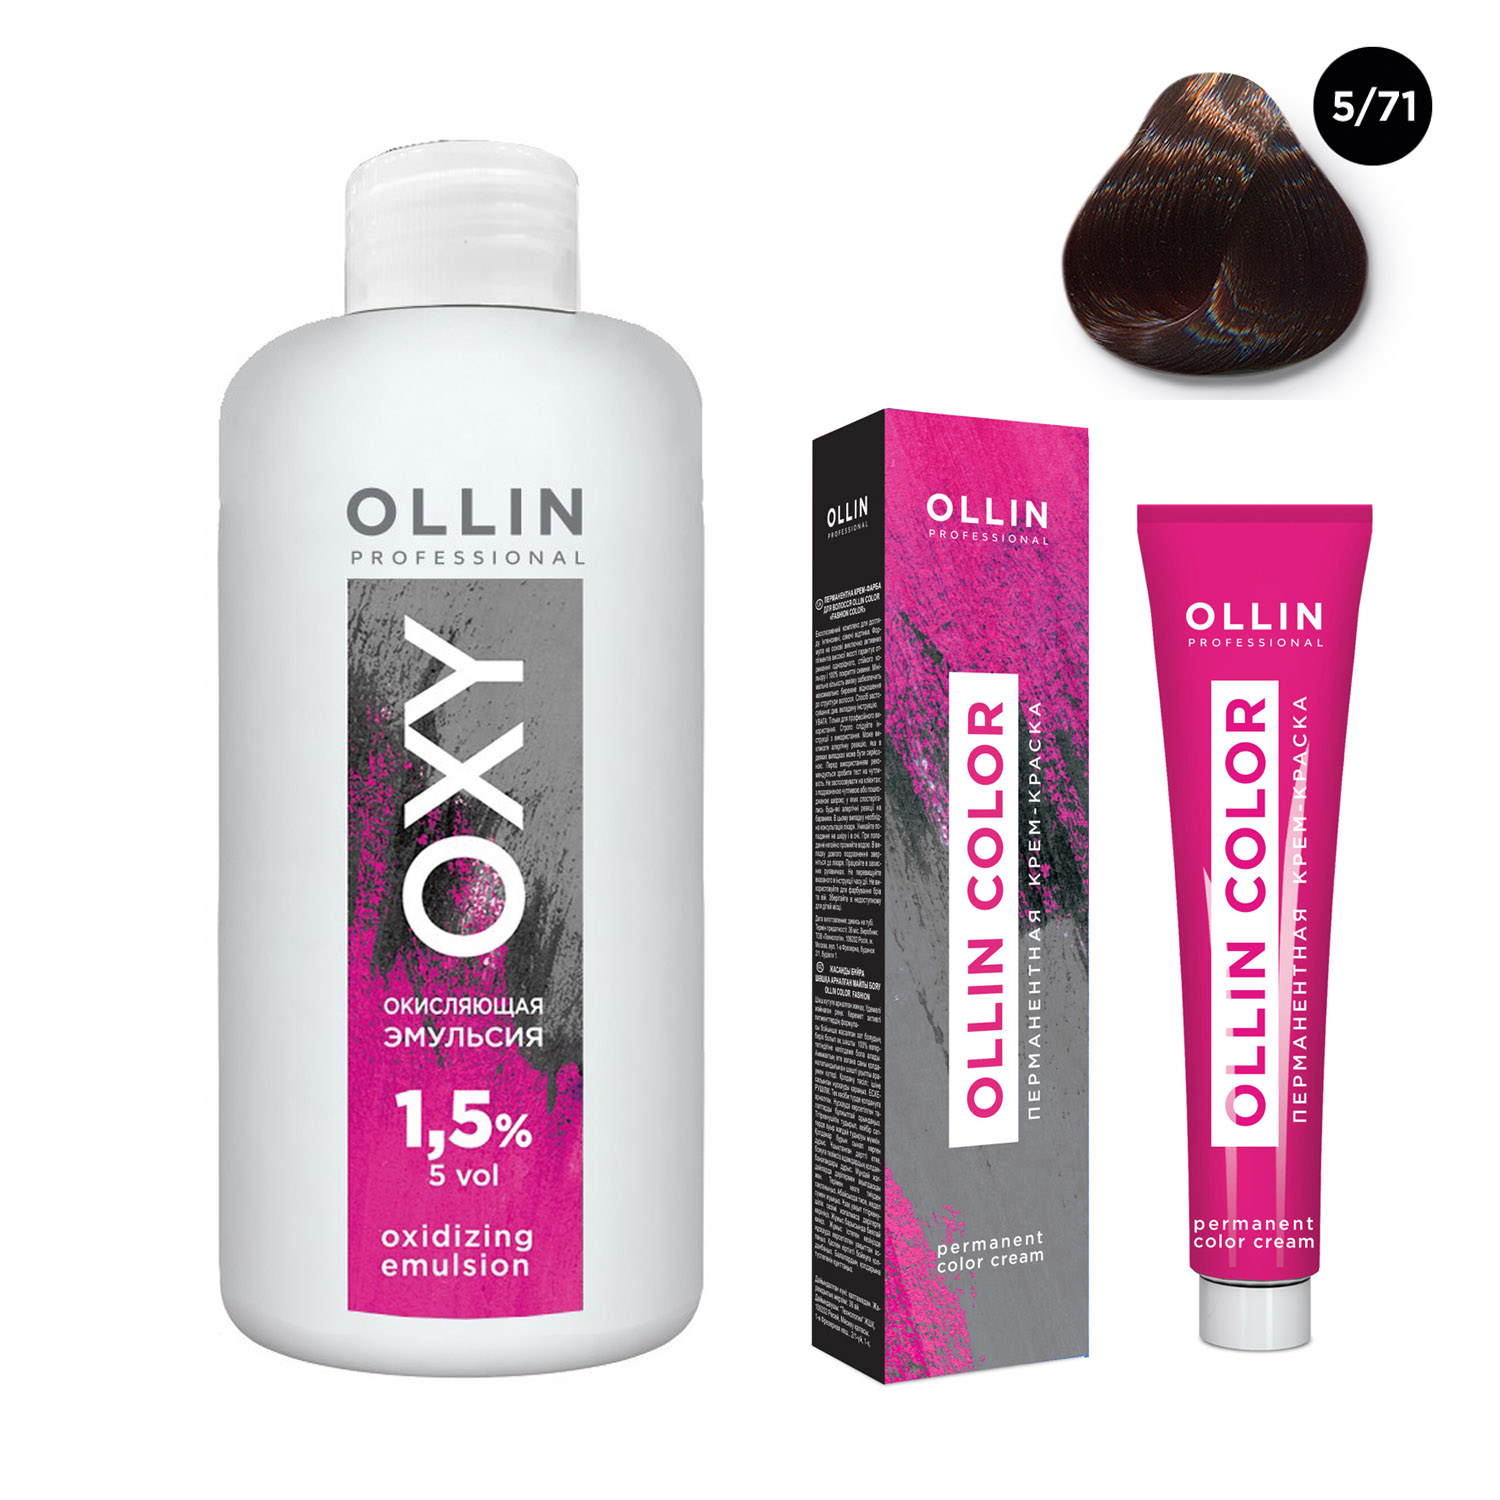 Ollin Professional Набор Перманентная крем-краска для волос Ollin Color оттенок 5/71 светлый шатен коричнево-пепельный 100 мл + Окисляющая эмульсия Oxy 1,5% 150 мл (Ollin Professional, Ollin Color)